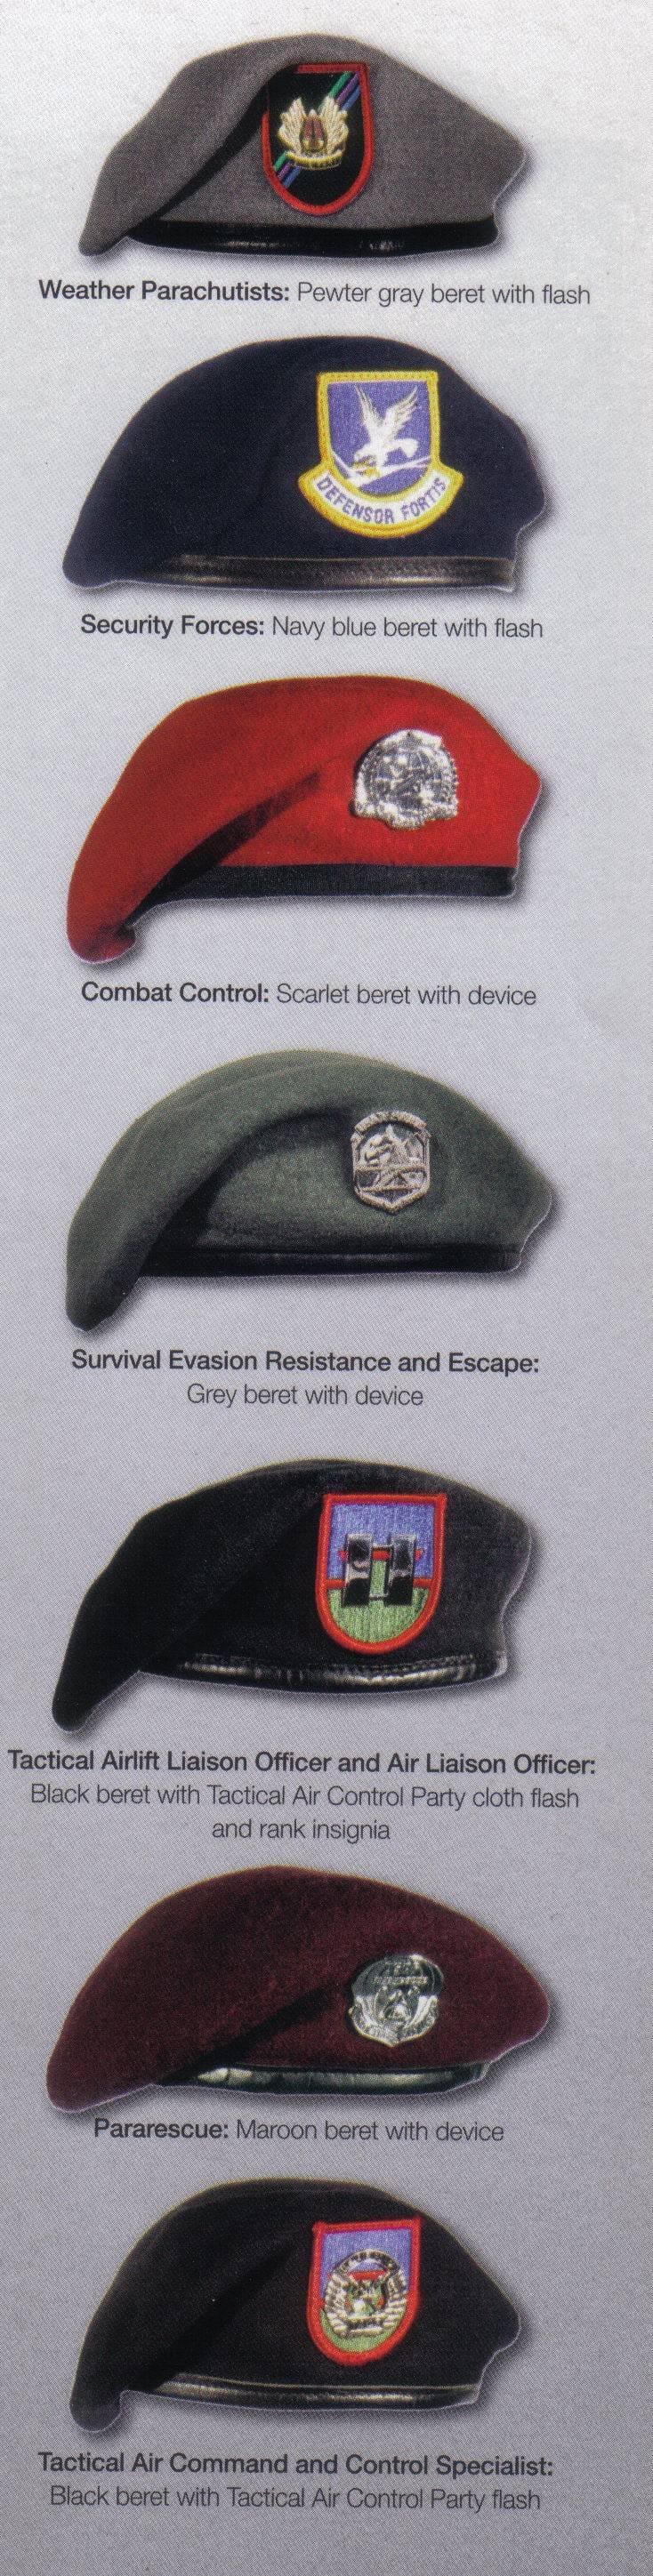 combat control beret